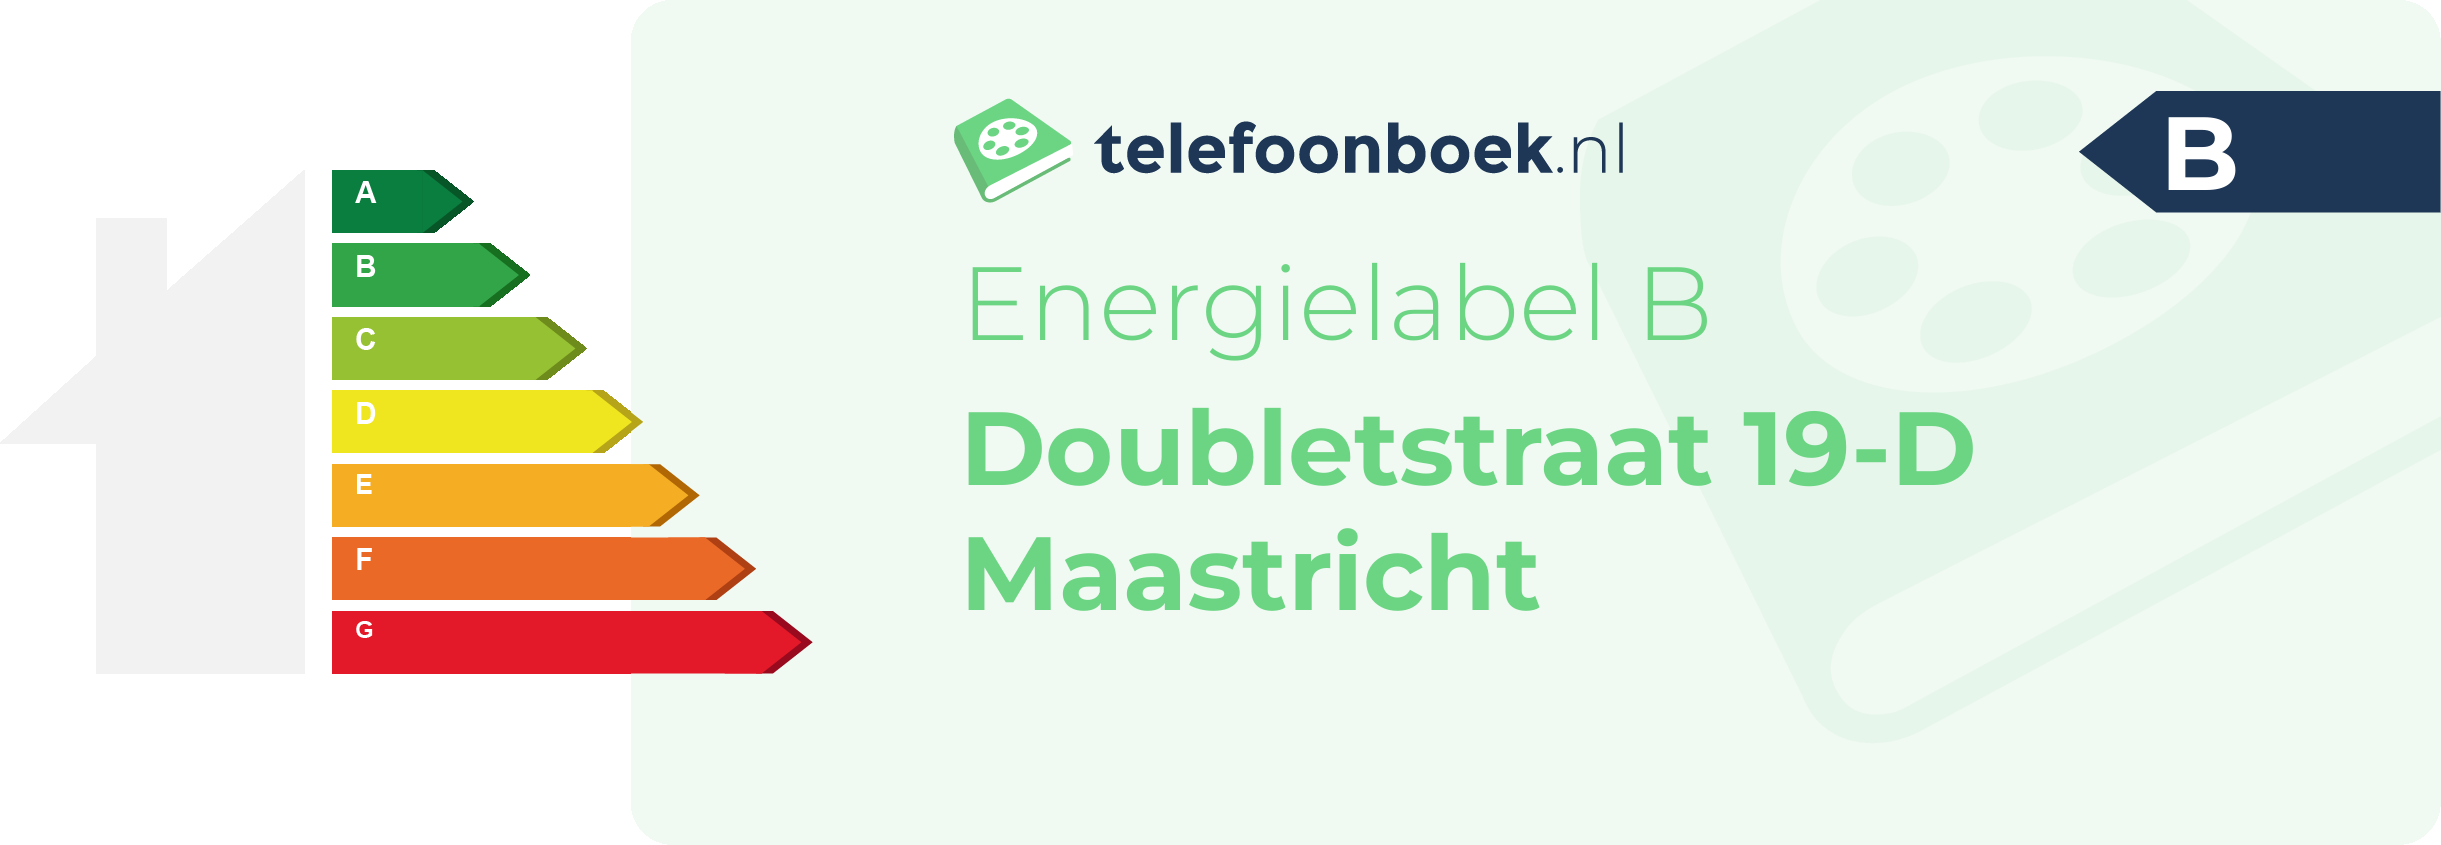 Energielabel Doubletstraat 19-D Maastricht